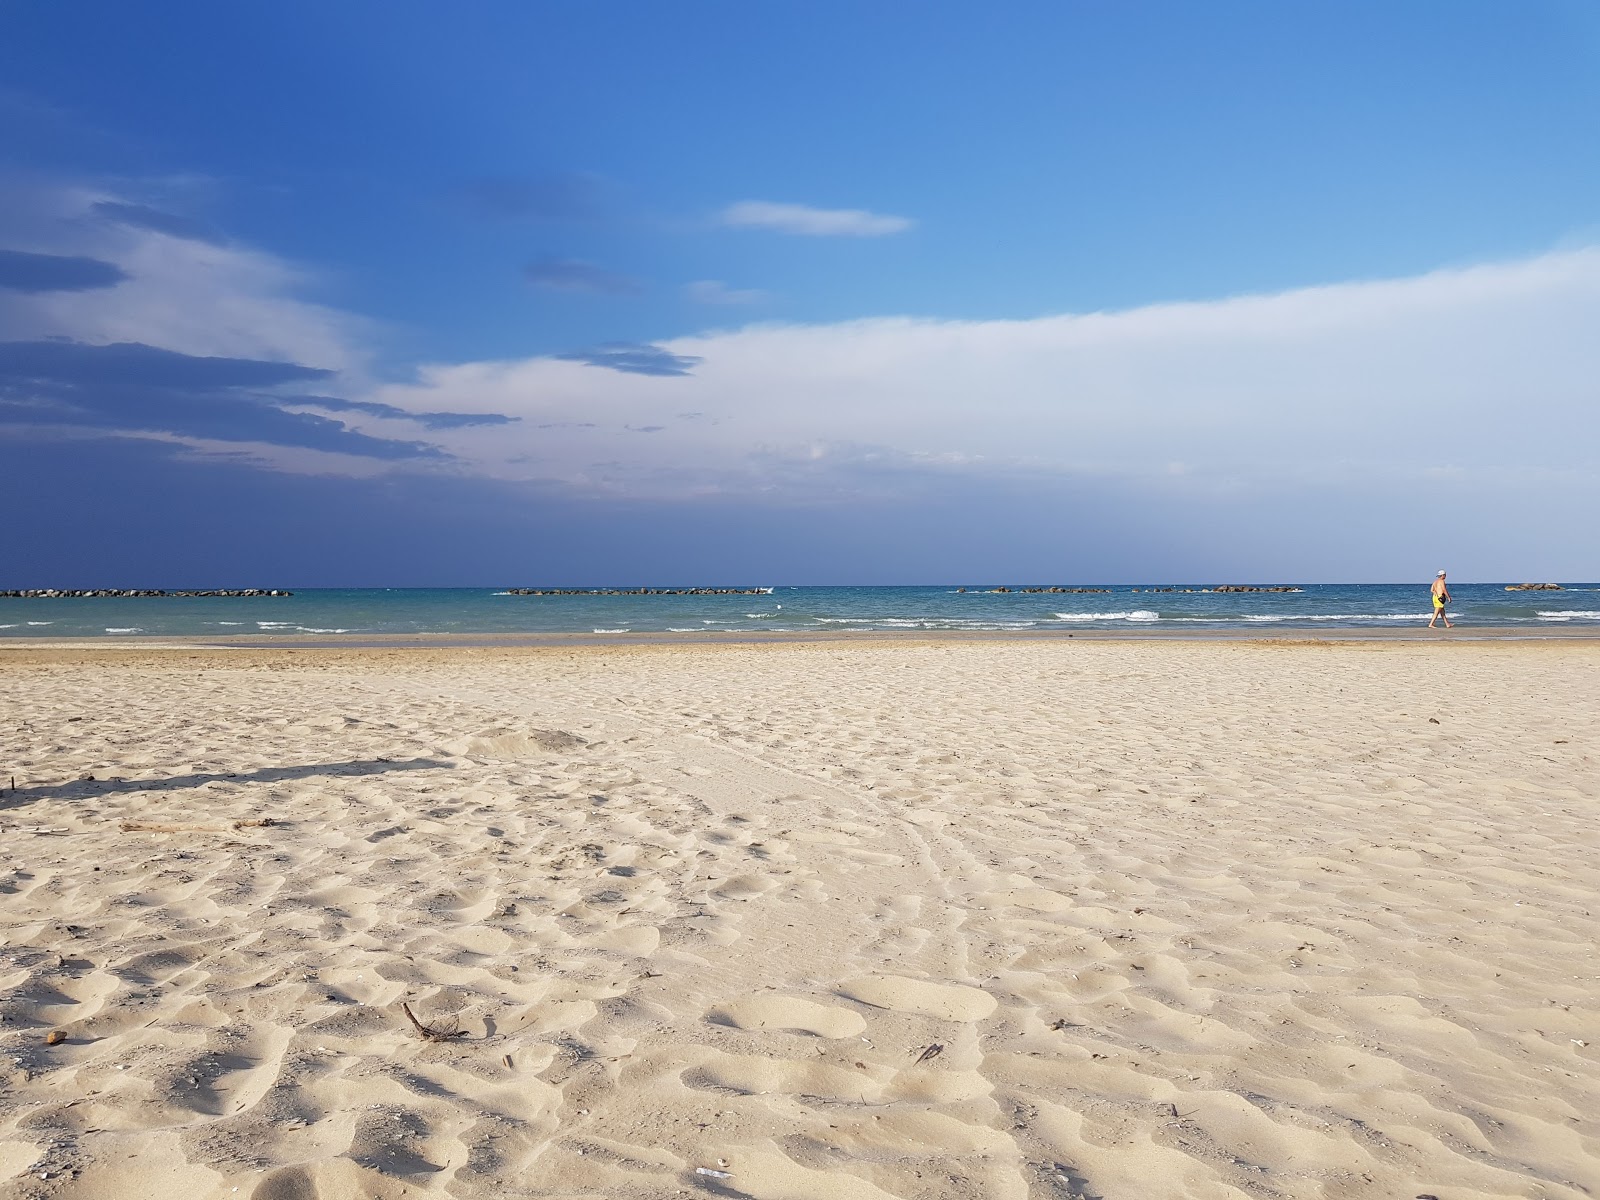 Senigallia beach'in fotoğrafı - rahatlamayı sevenler arasında popüler bir yer